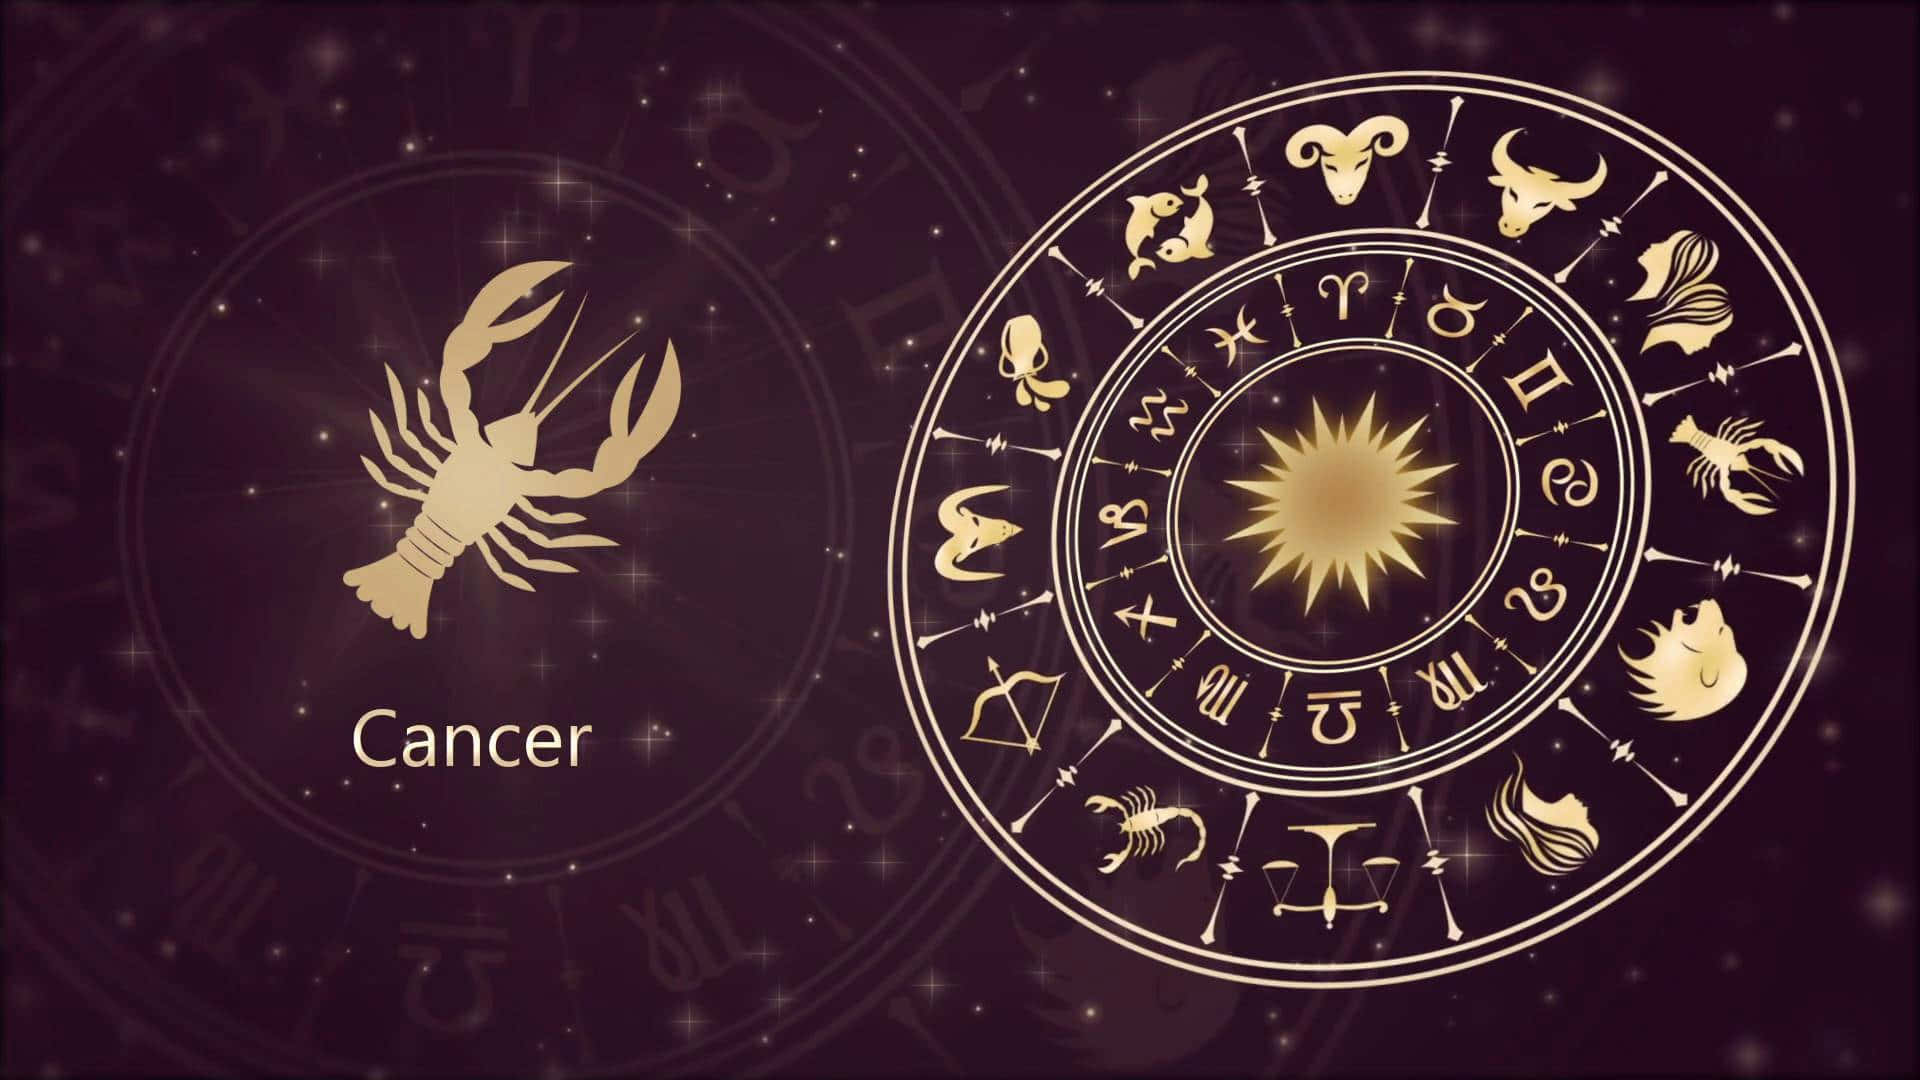 100 Cute Cancer Zodiac Sign Wallpapers  Wallpaperscom